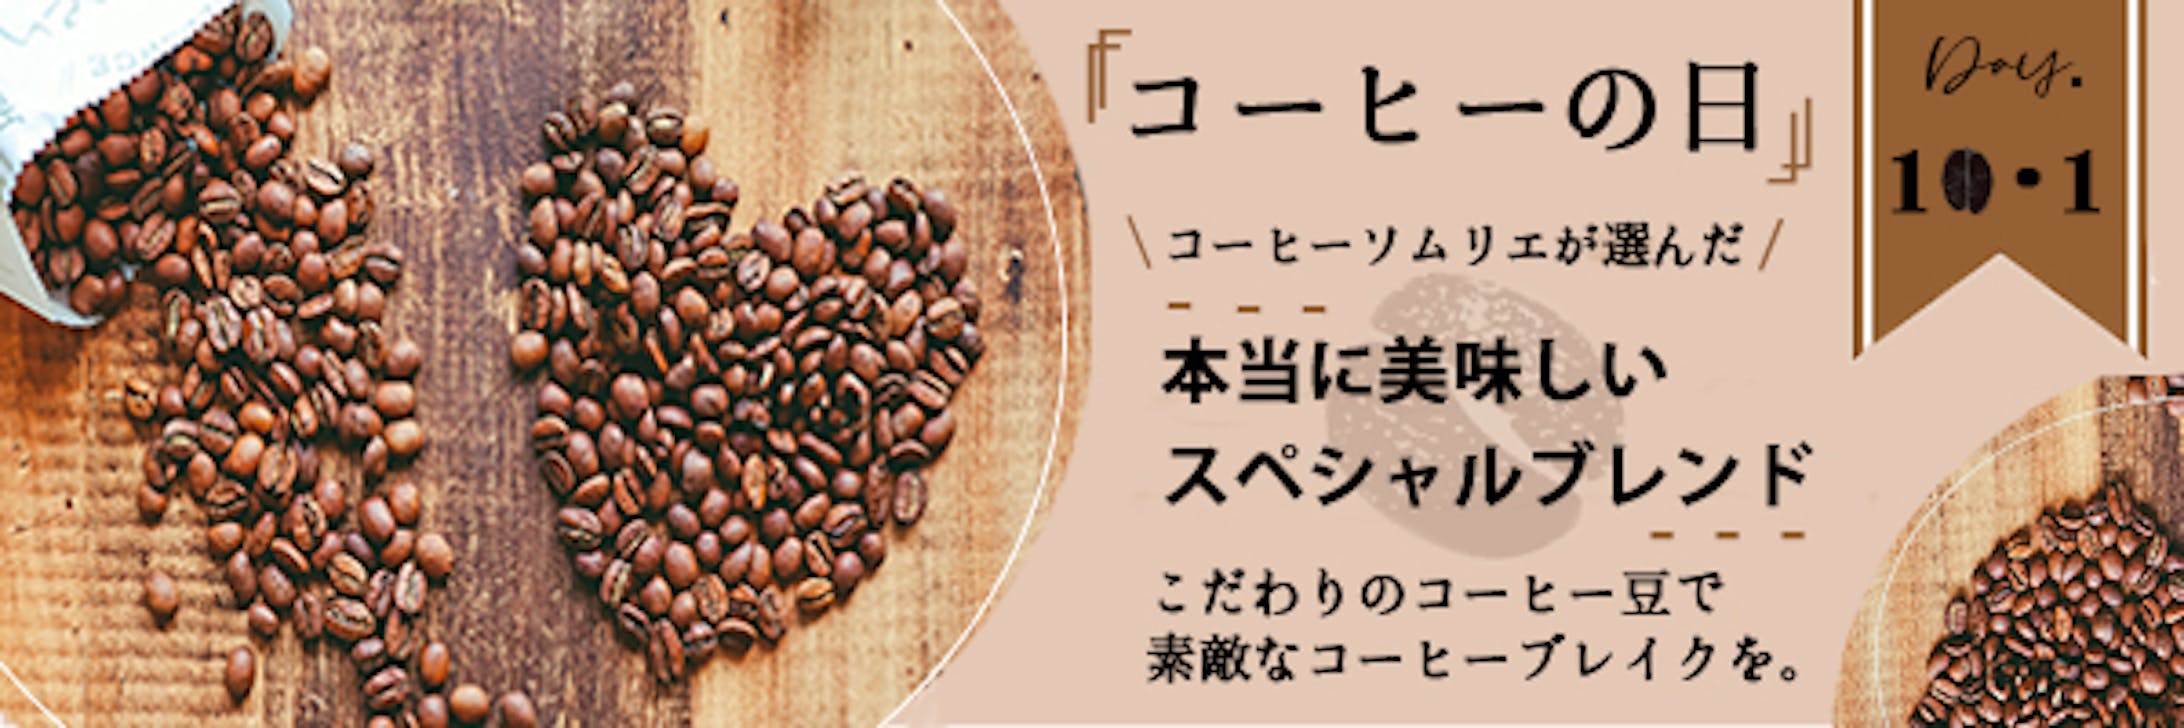 「コーヒーの日」バナー-1